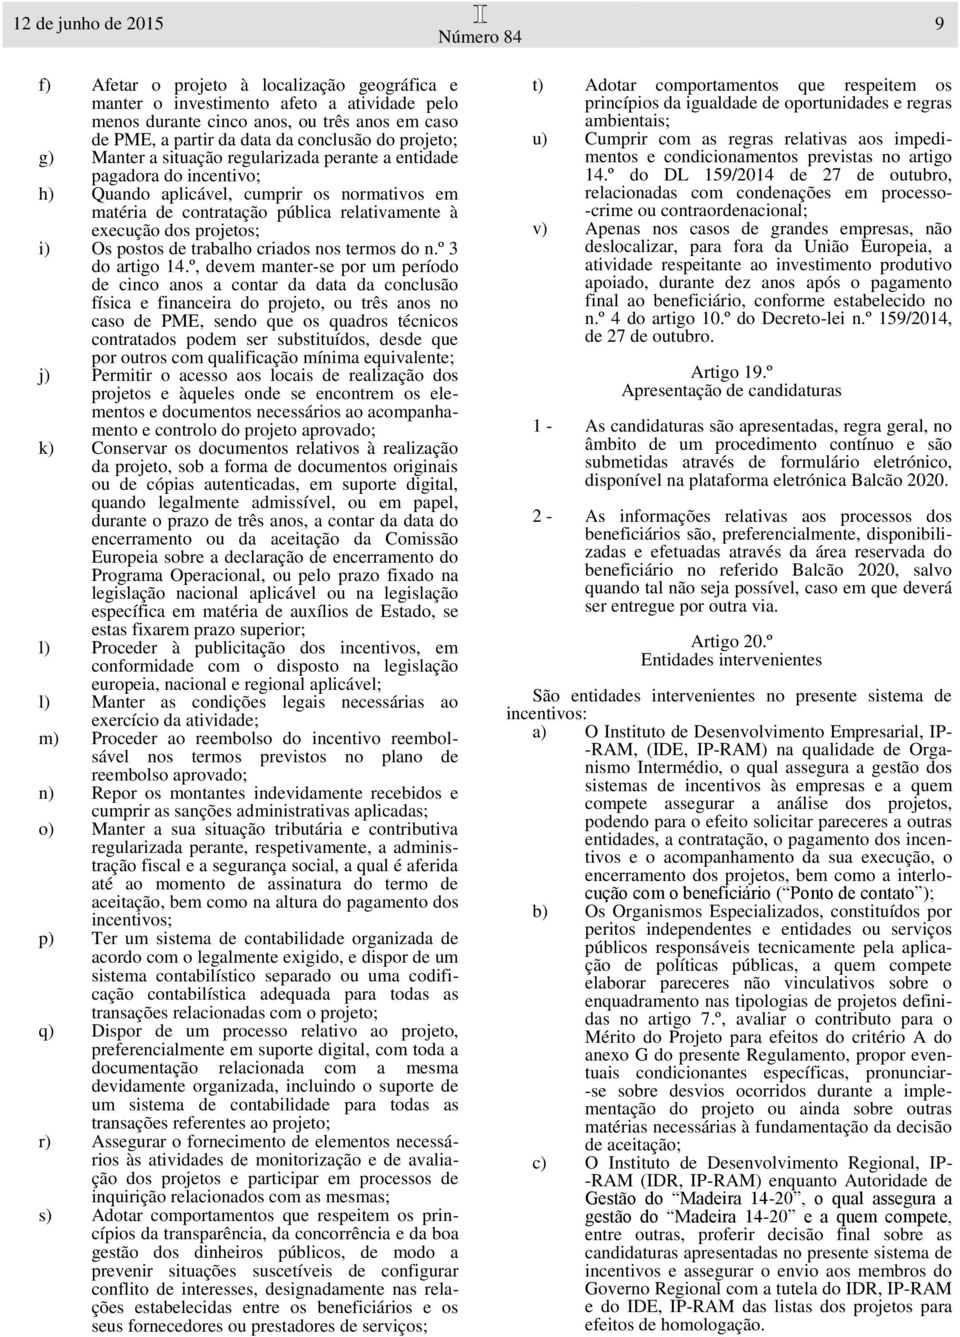 projetos; i) Os postos de trabalho criados nos termos do n.º 3 do artigo 14.